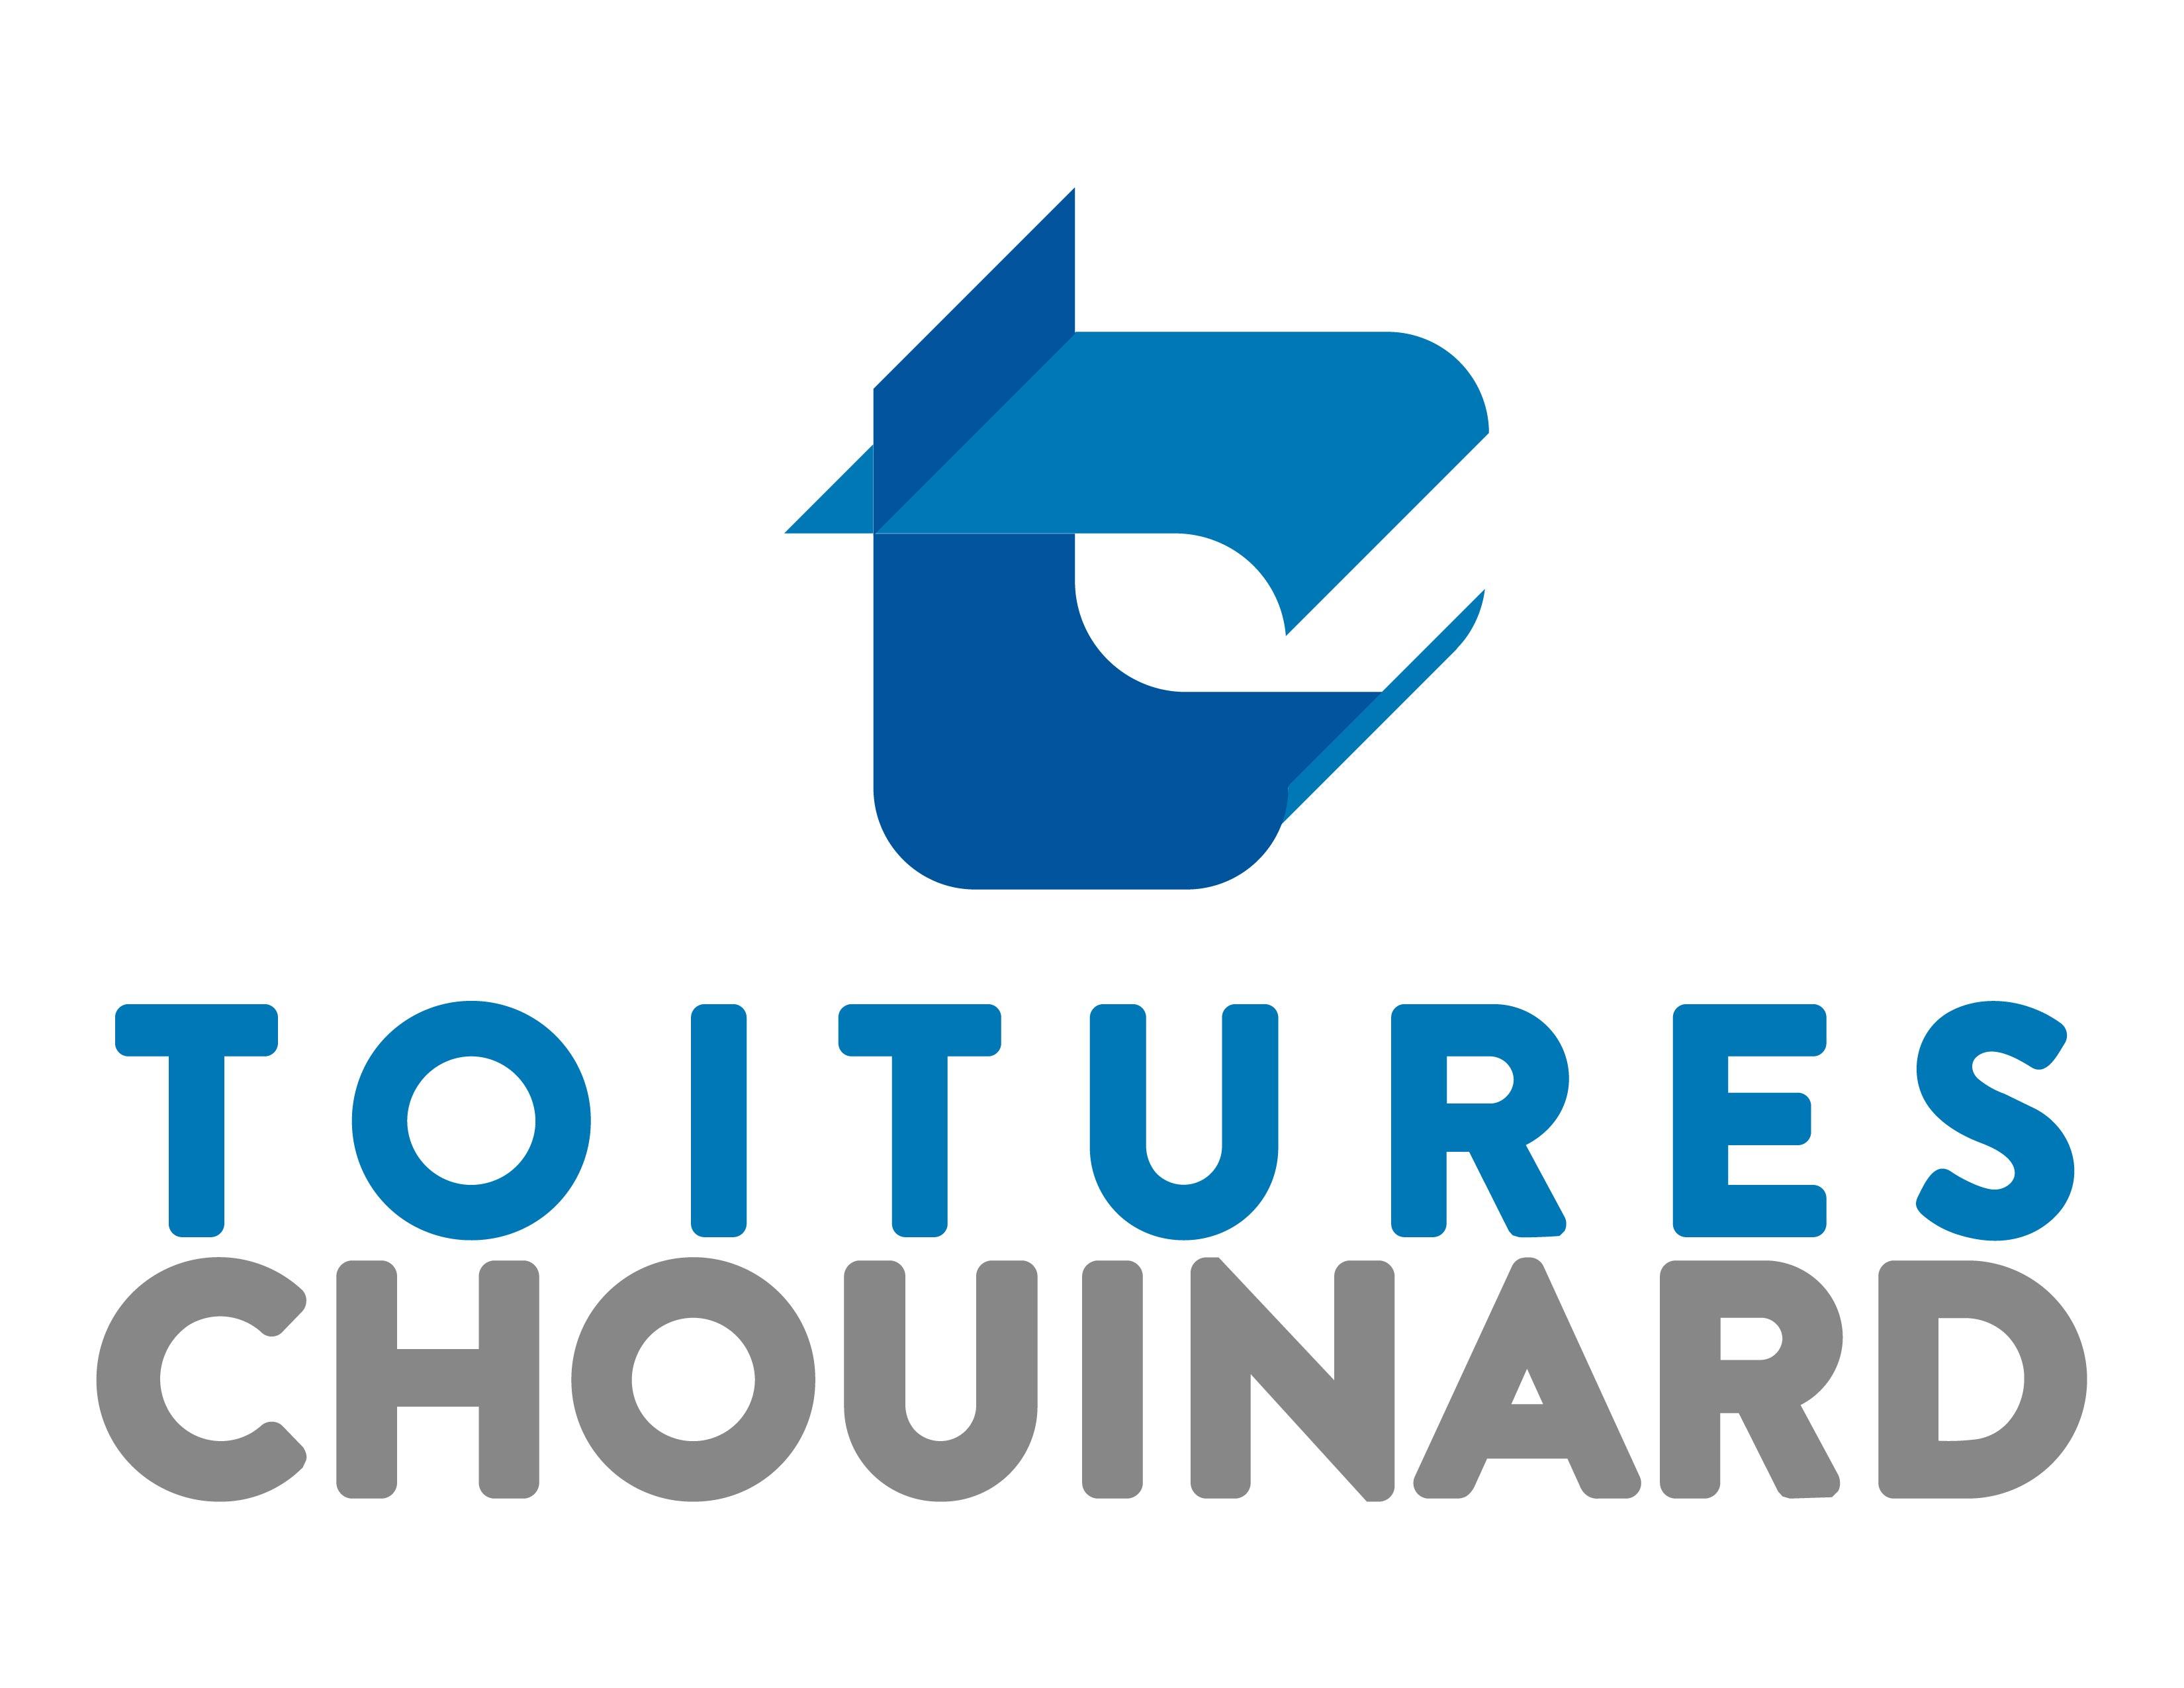 Toitures Chouinard